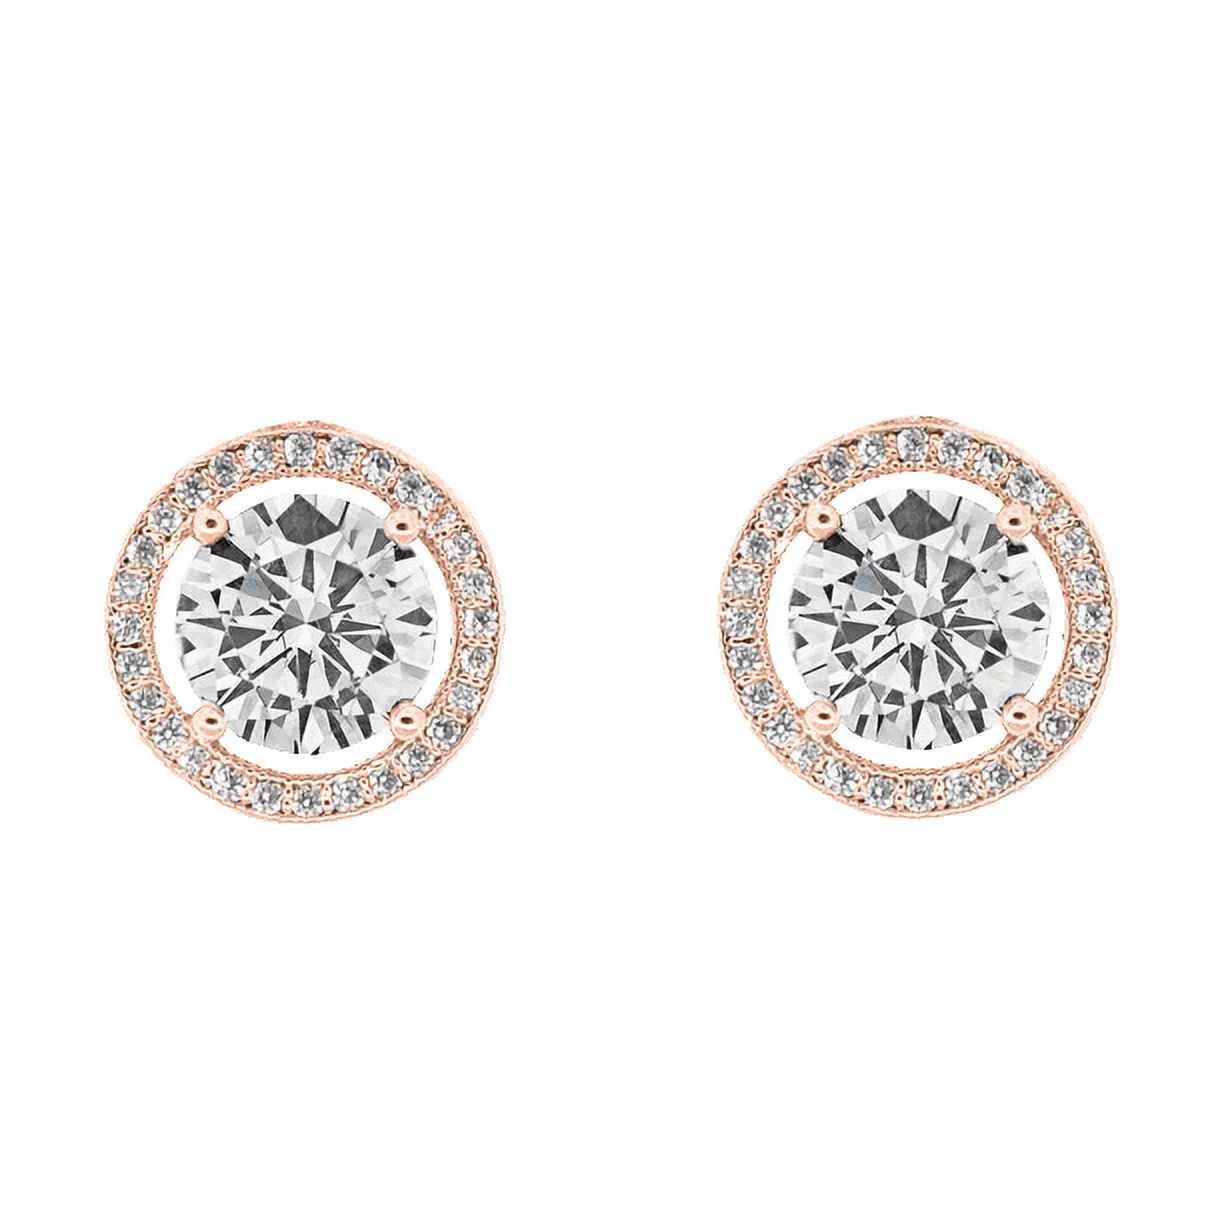 Cate & Chloe Ariel 18k Rose Gold Plated Halo Stud Earrings | CZ Crystal Earrings for Women, Gift ... | Walmart (US)